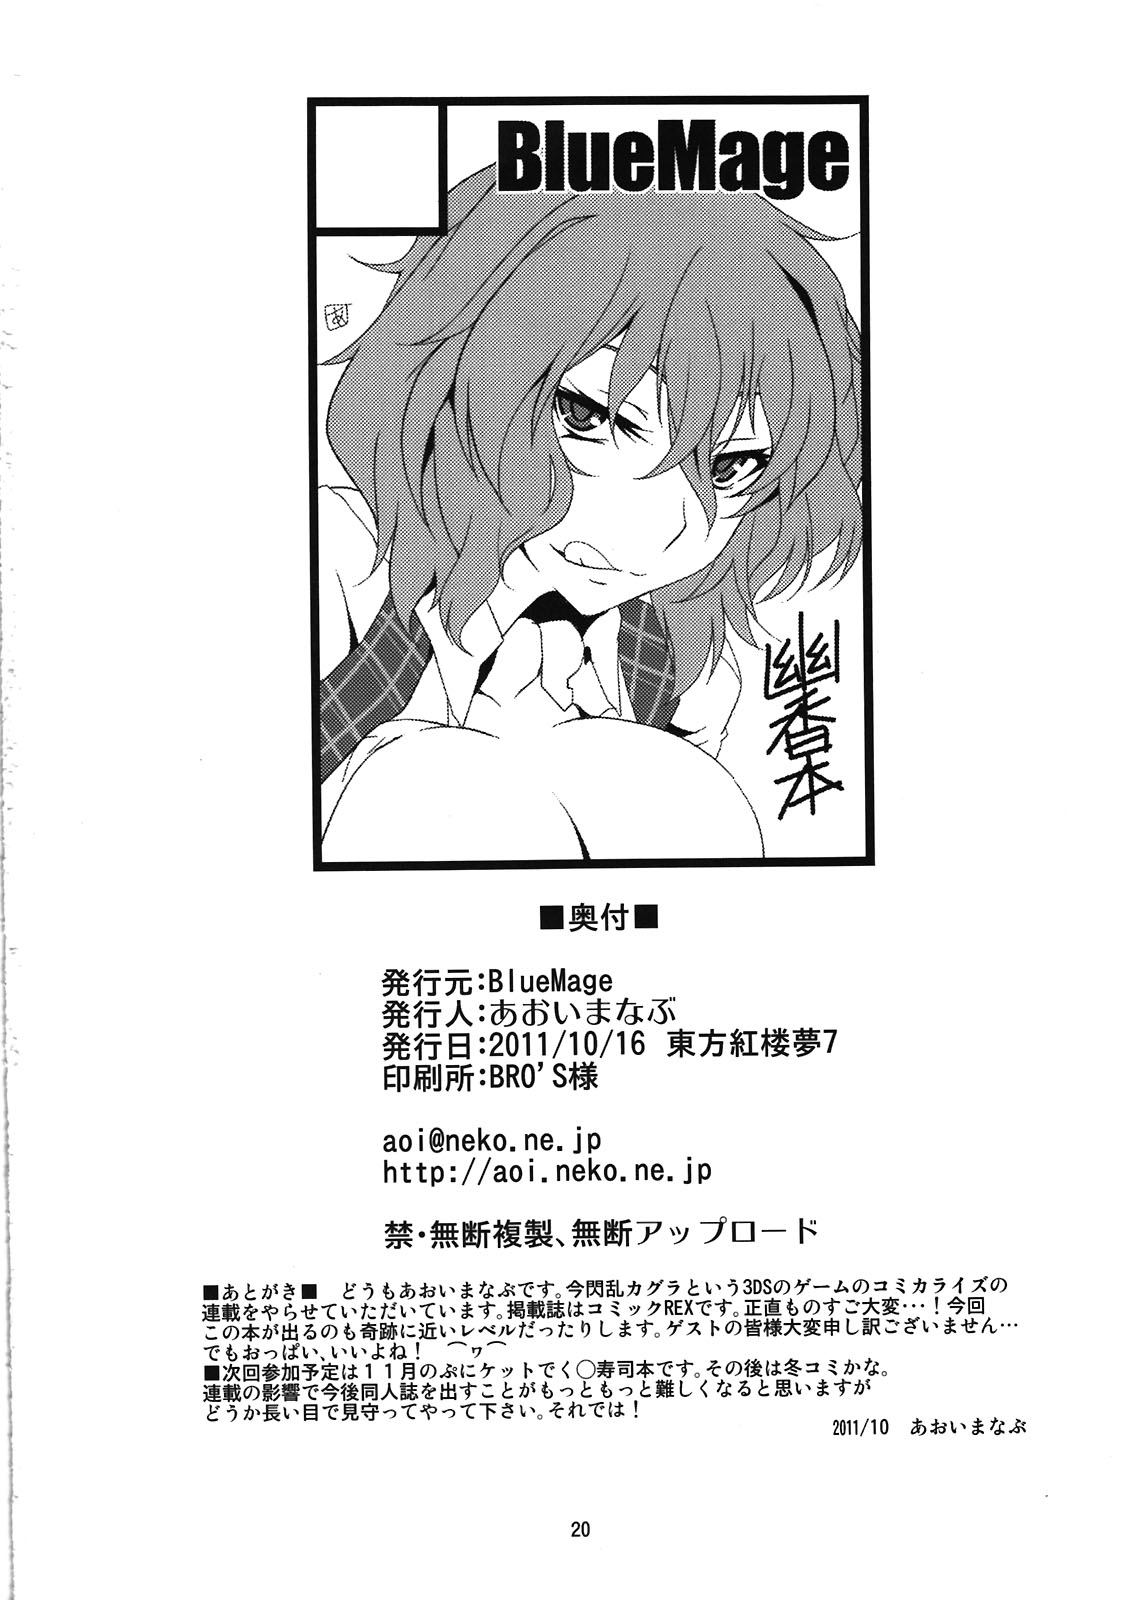 (Kouroumu 7) [BlueMage (Aoi Manabu)] Mune no Naka e Ittemitai to Omoimasenka (Touhou Project) page 22 full